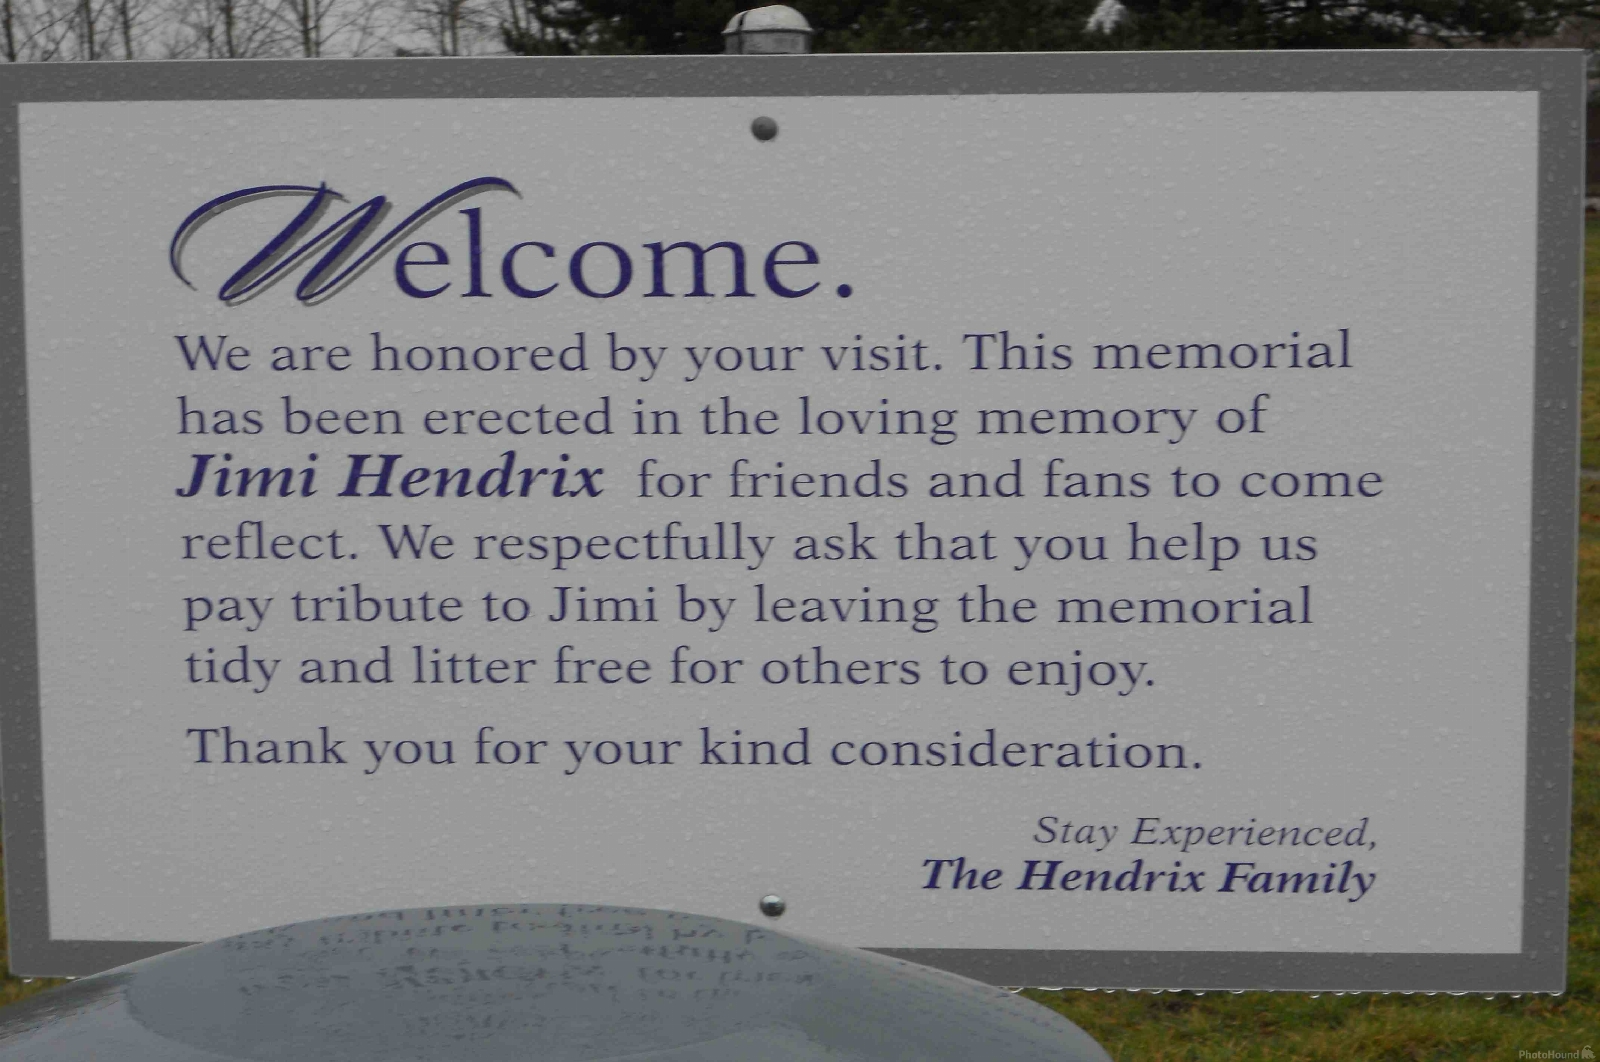 Image of Jimi Hendrix Memorial by Steve Daylong